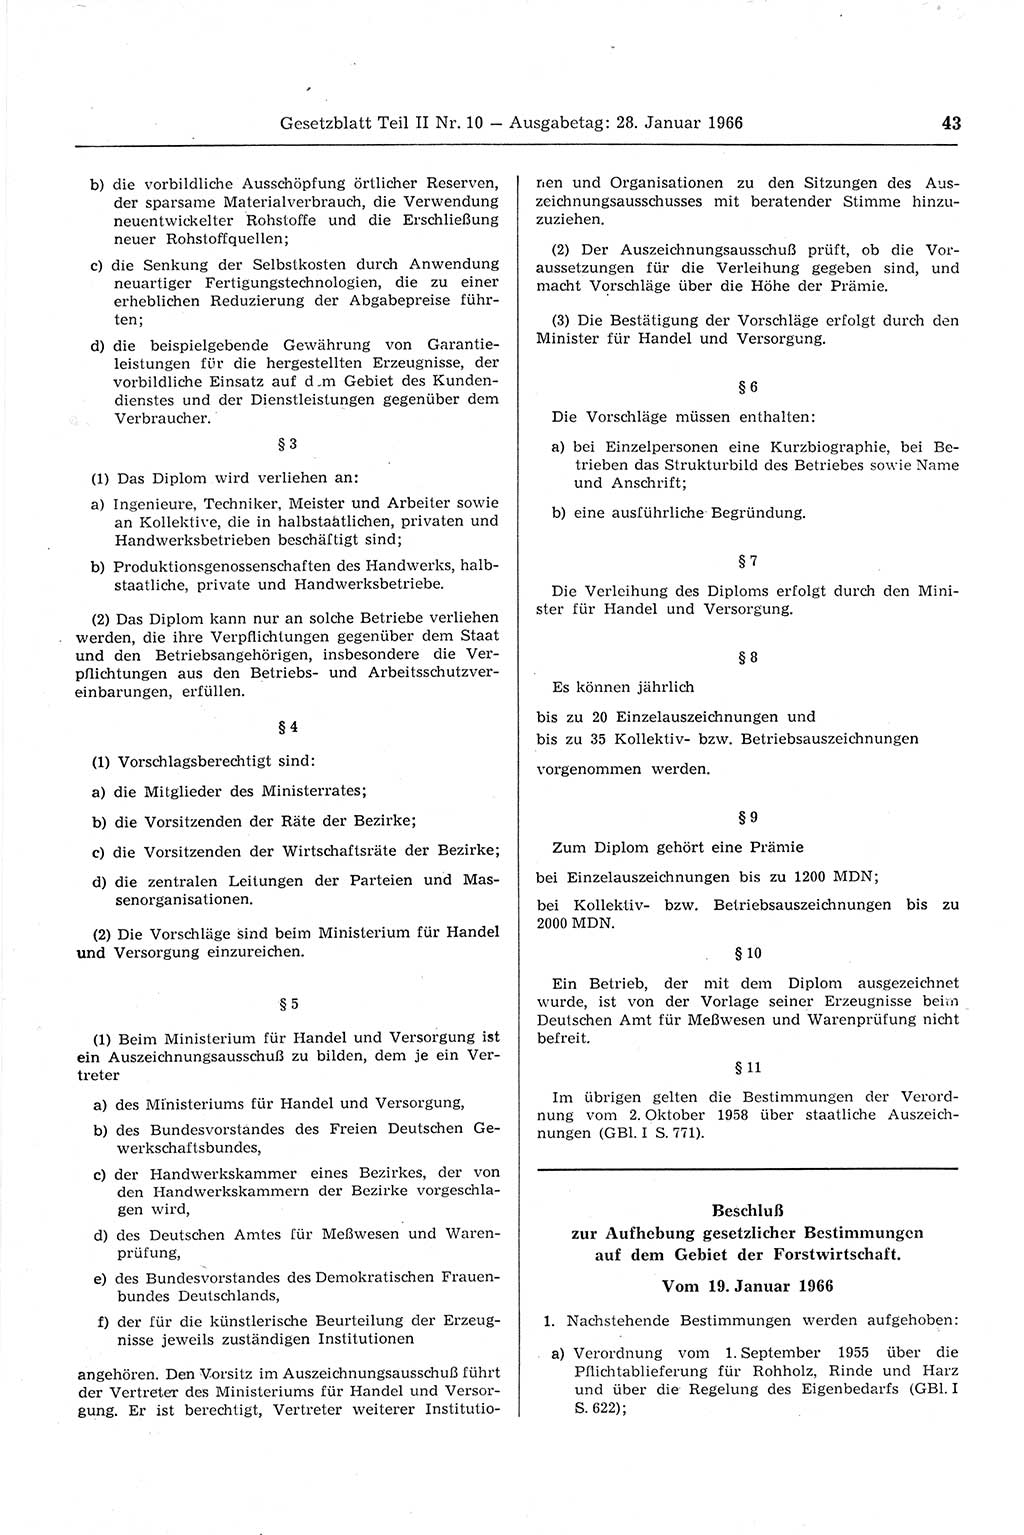 Gesetzblatt (GBl.) der Deutschen Demokratischen Republik (DDR) Teil ⅠⅠ 1966, Seite 43 (GBl. DDR ⅠⅠ 1966, S. 43)